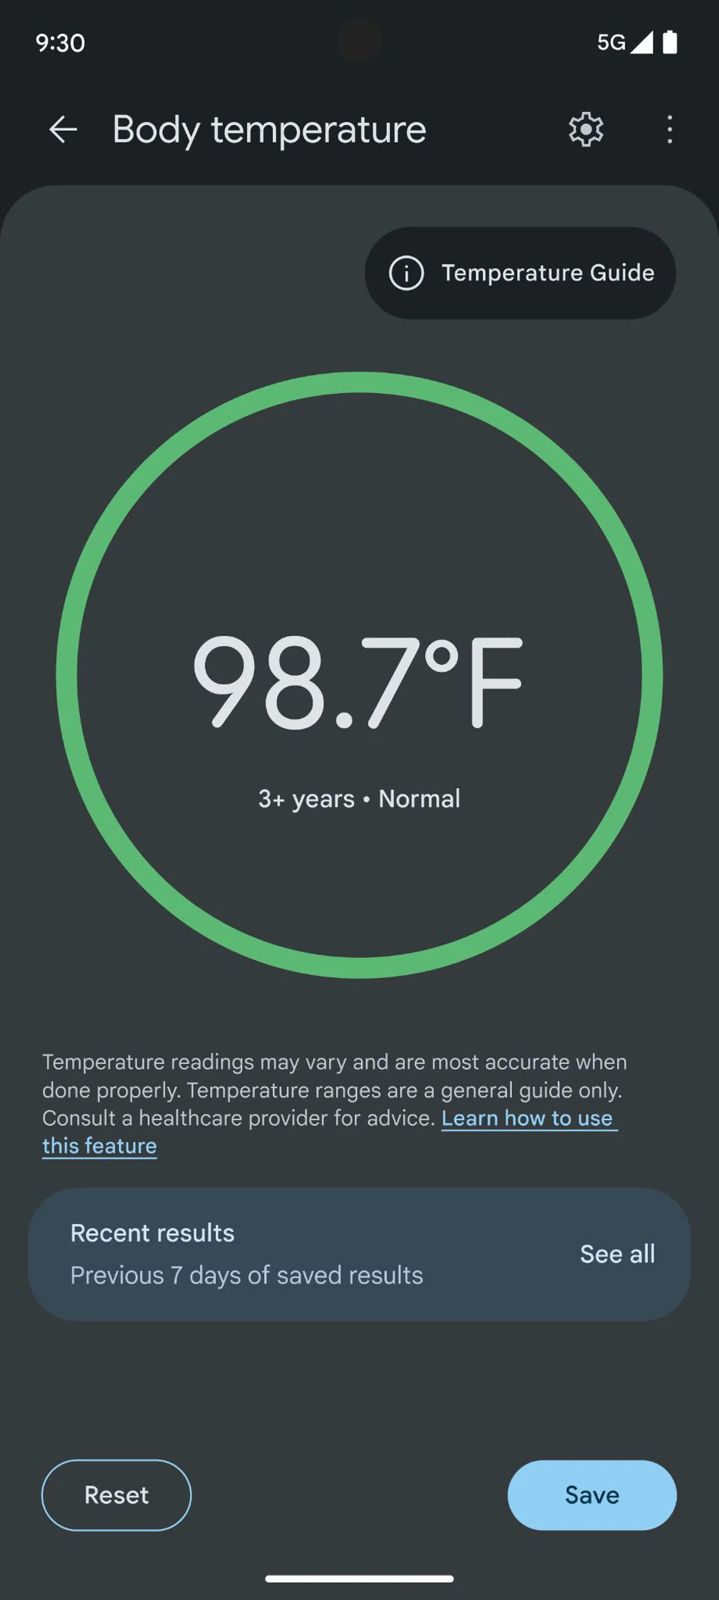 Google Body Temperature Guide